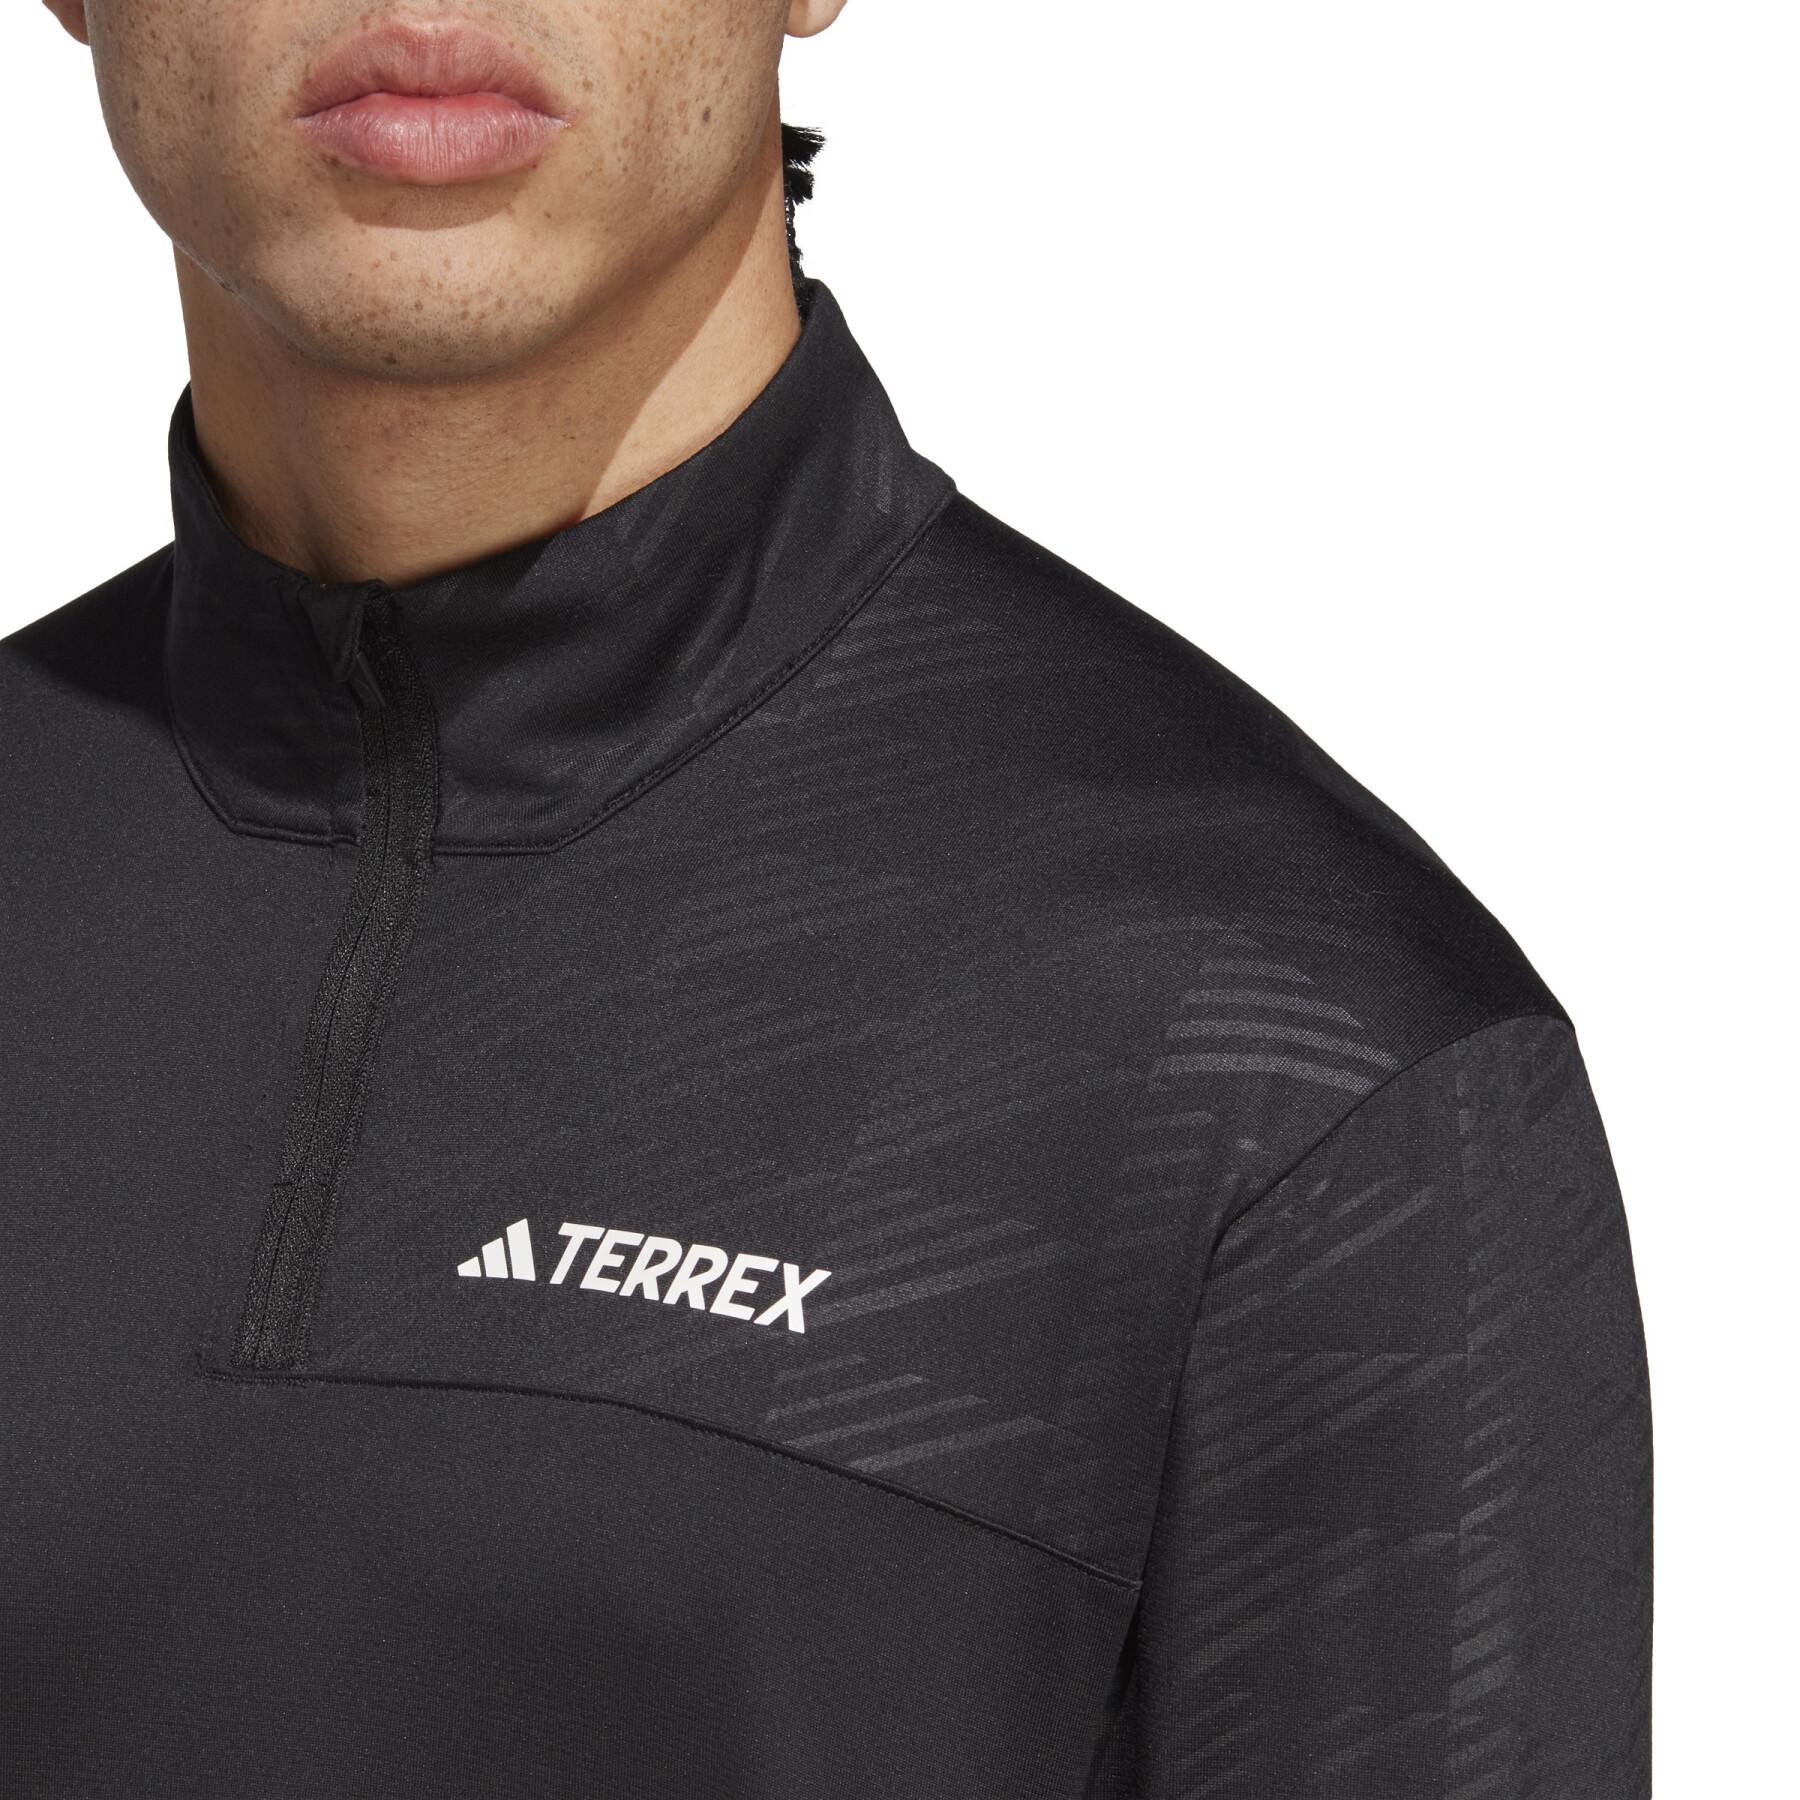 Camiseta interior de manga larga y media cremallera adidas Terrex Multi